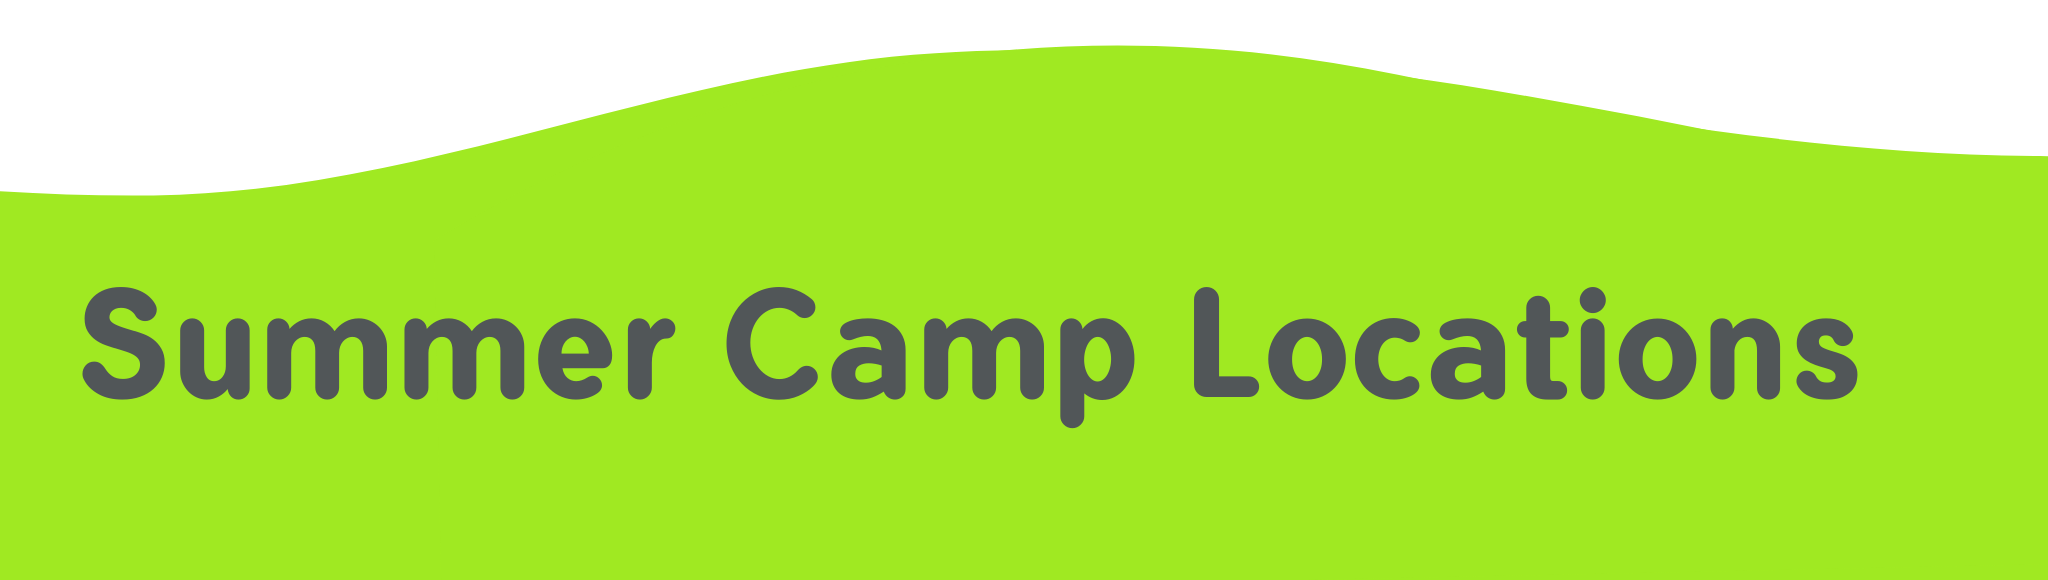 Summer Camp Locations Header 2048x580